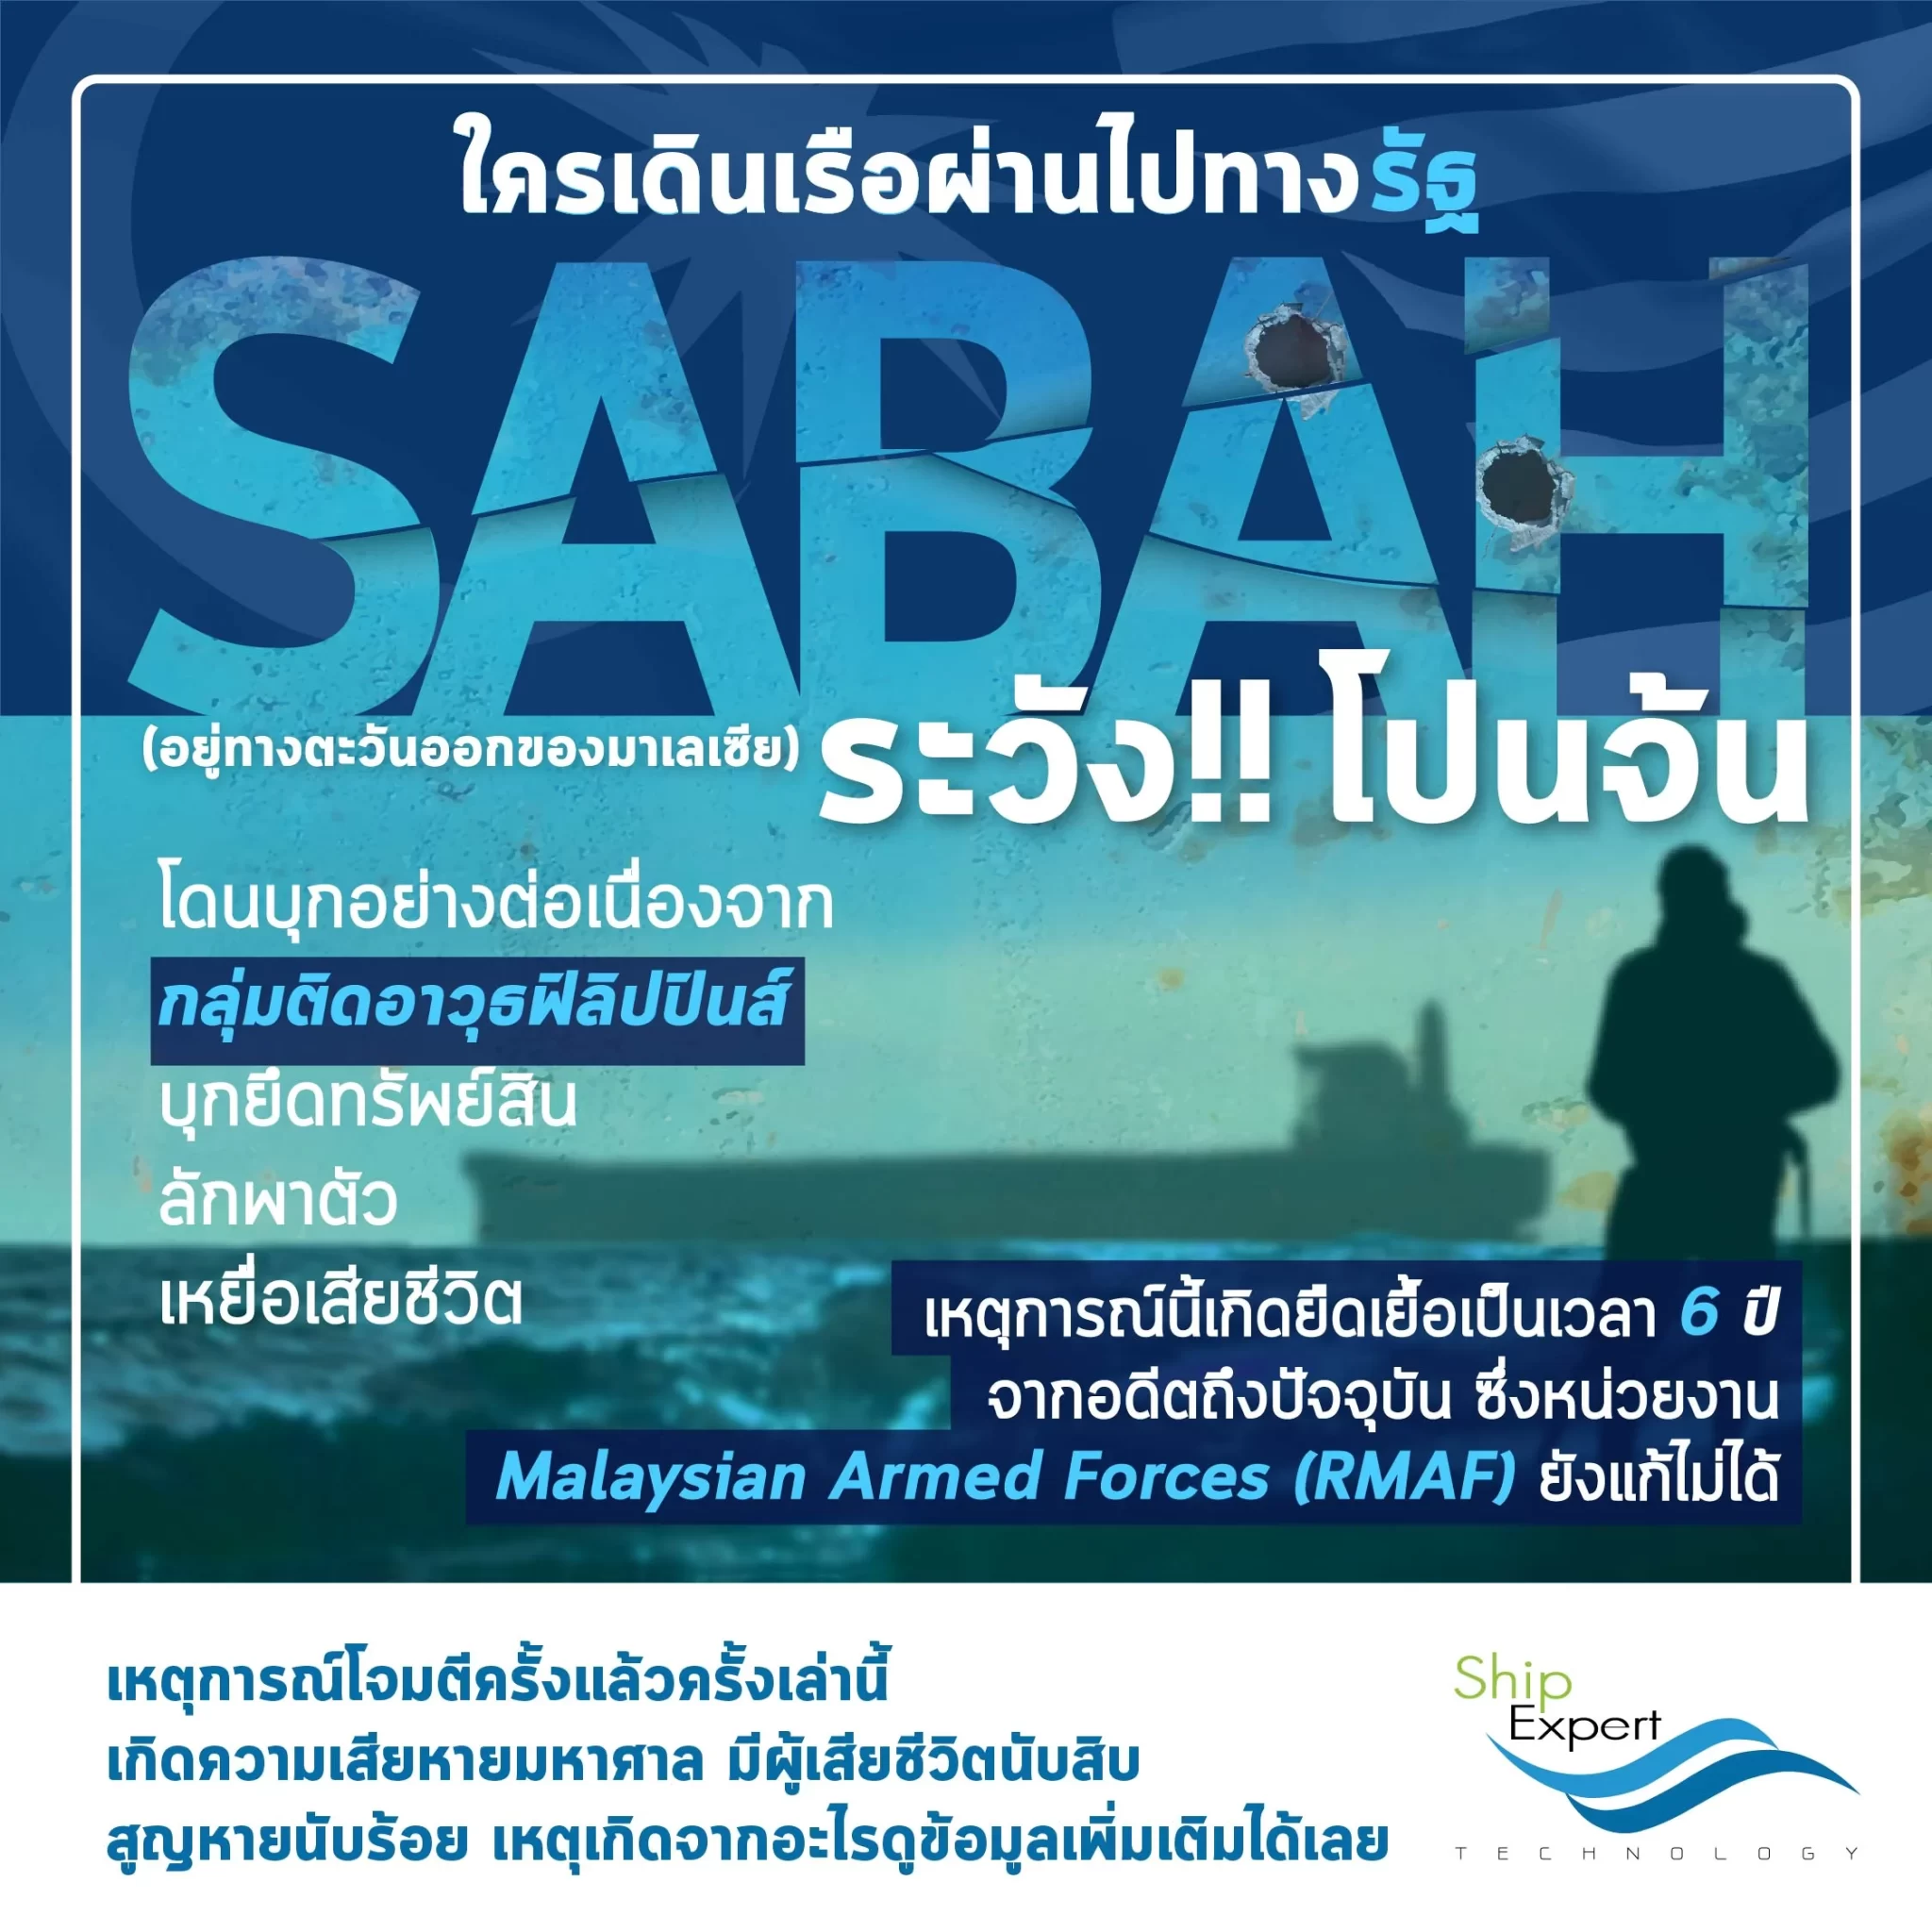 ใครเดินเรือผ่านไปทาง รัฐ Sabah ระวังโปนจ้น!